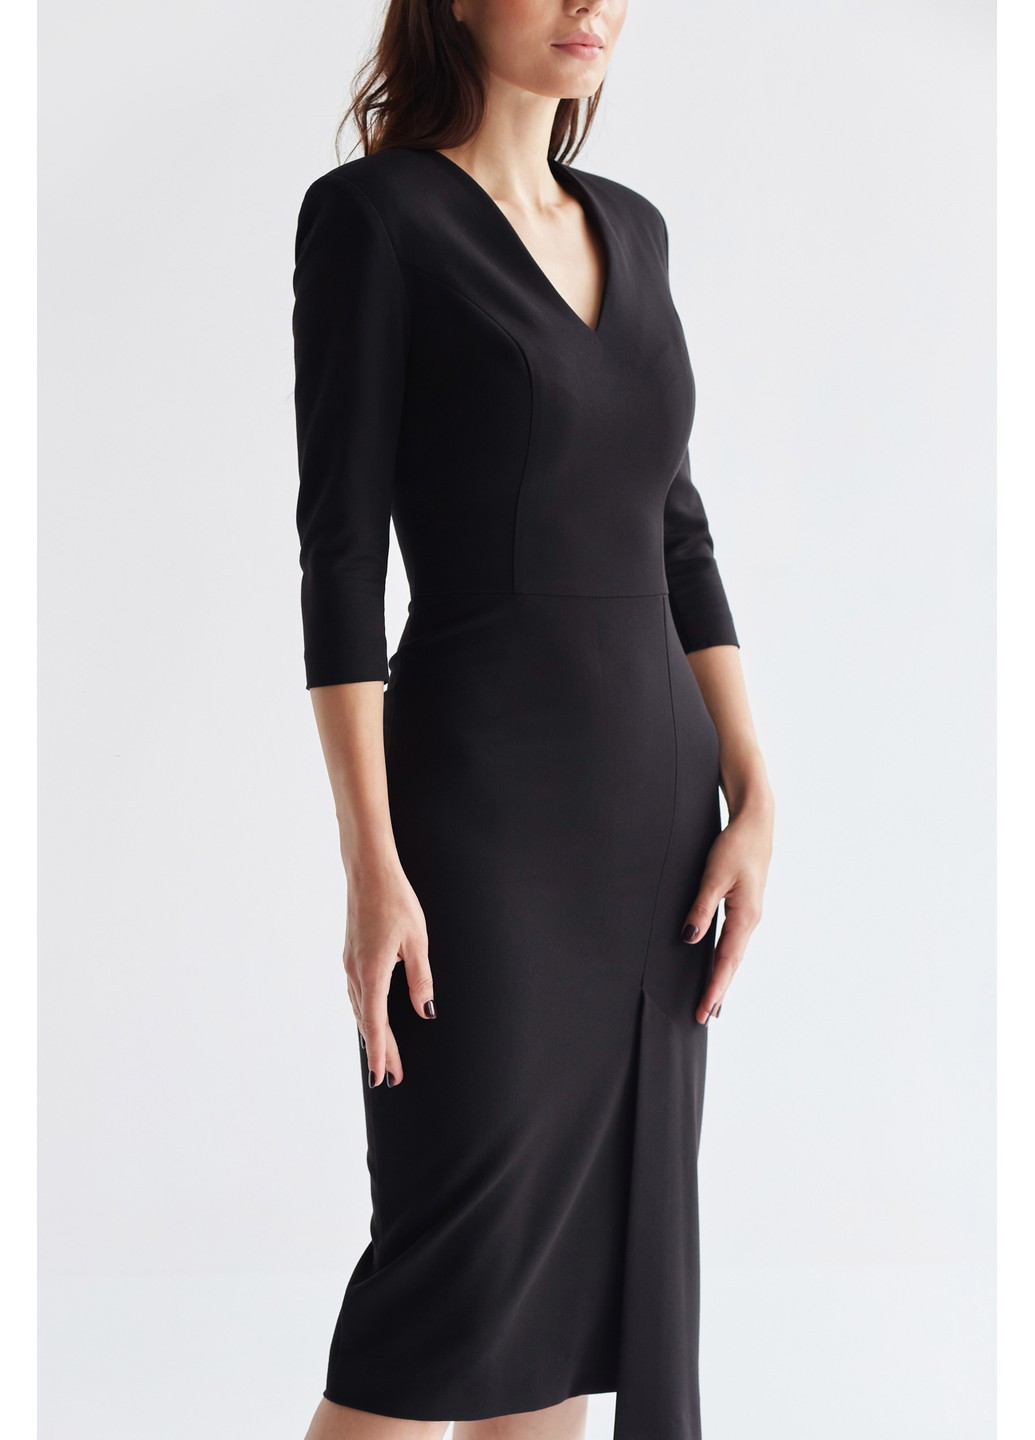 Черное деловое платье доминик футляр BYURSE однотонное